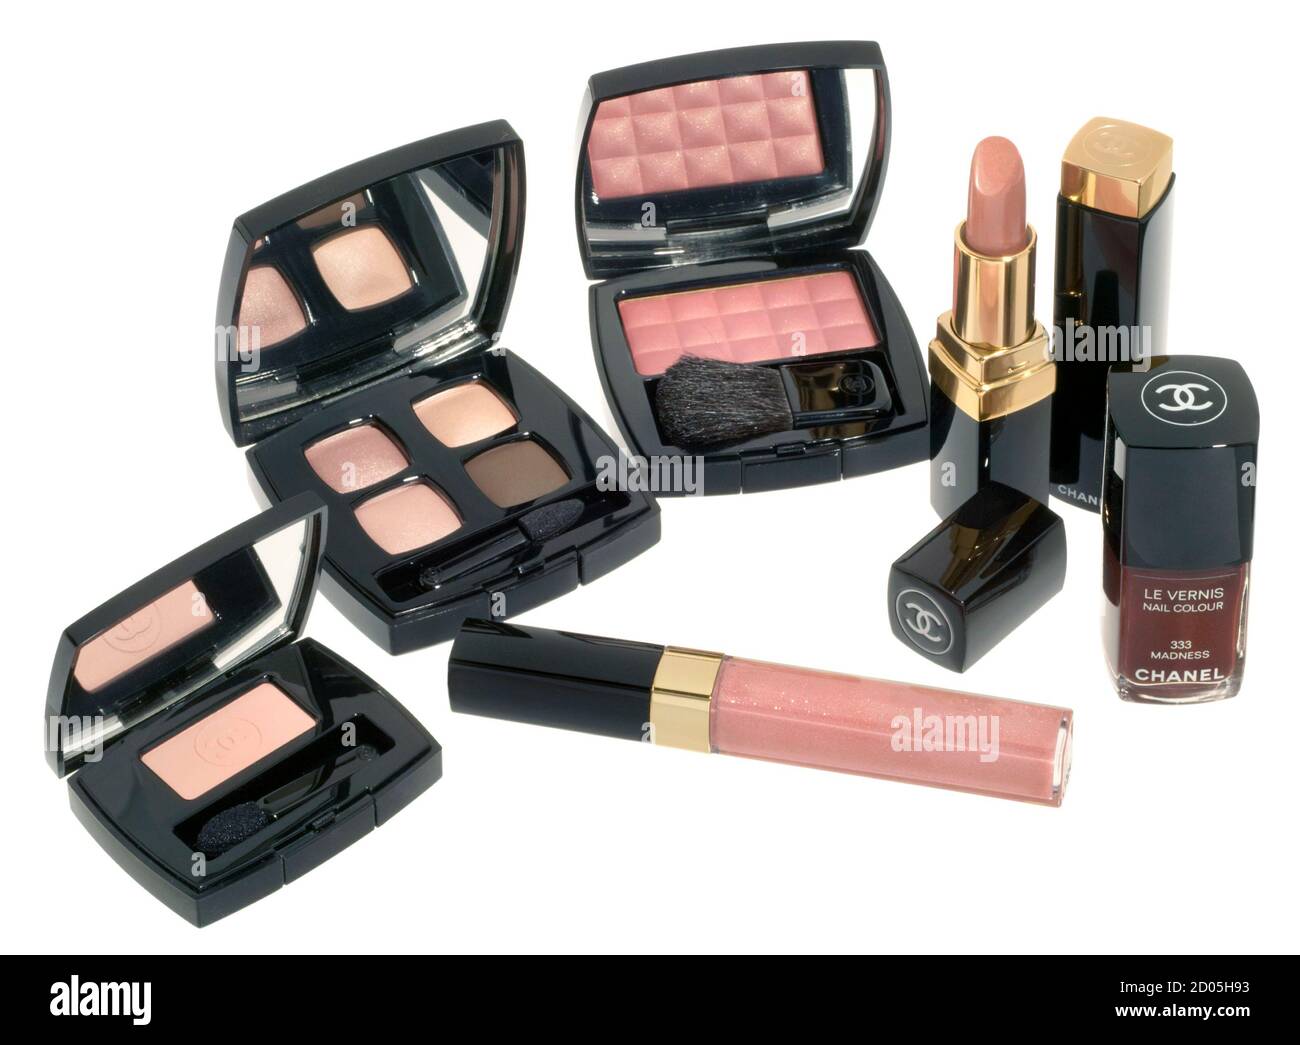 Collection de maquillage compacte Chanel photographiée sur fond blanc Photo  Stock - Alamy